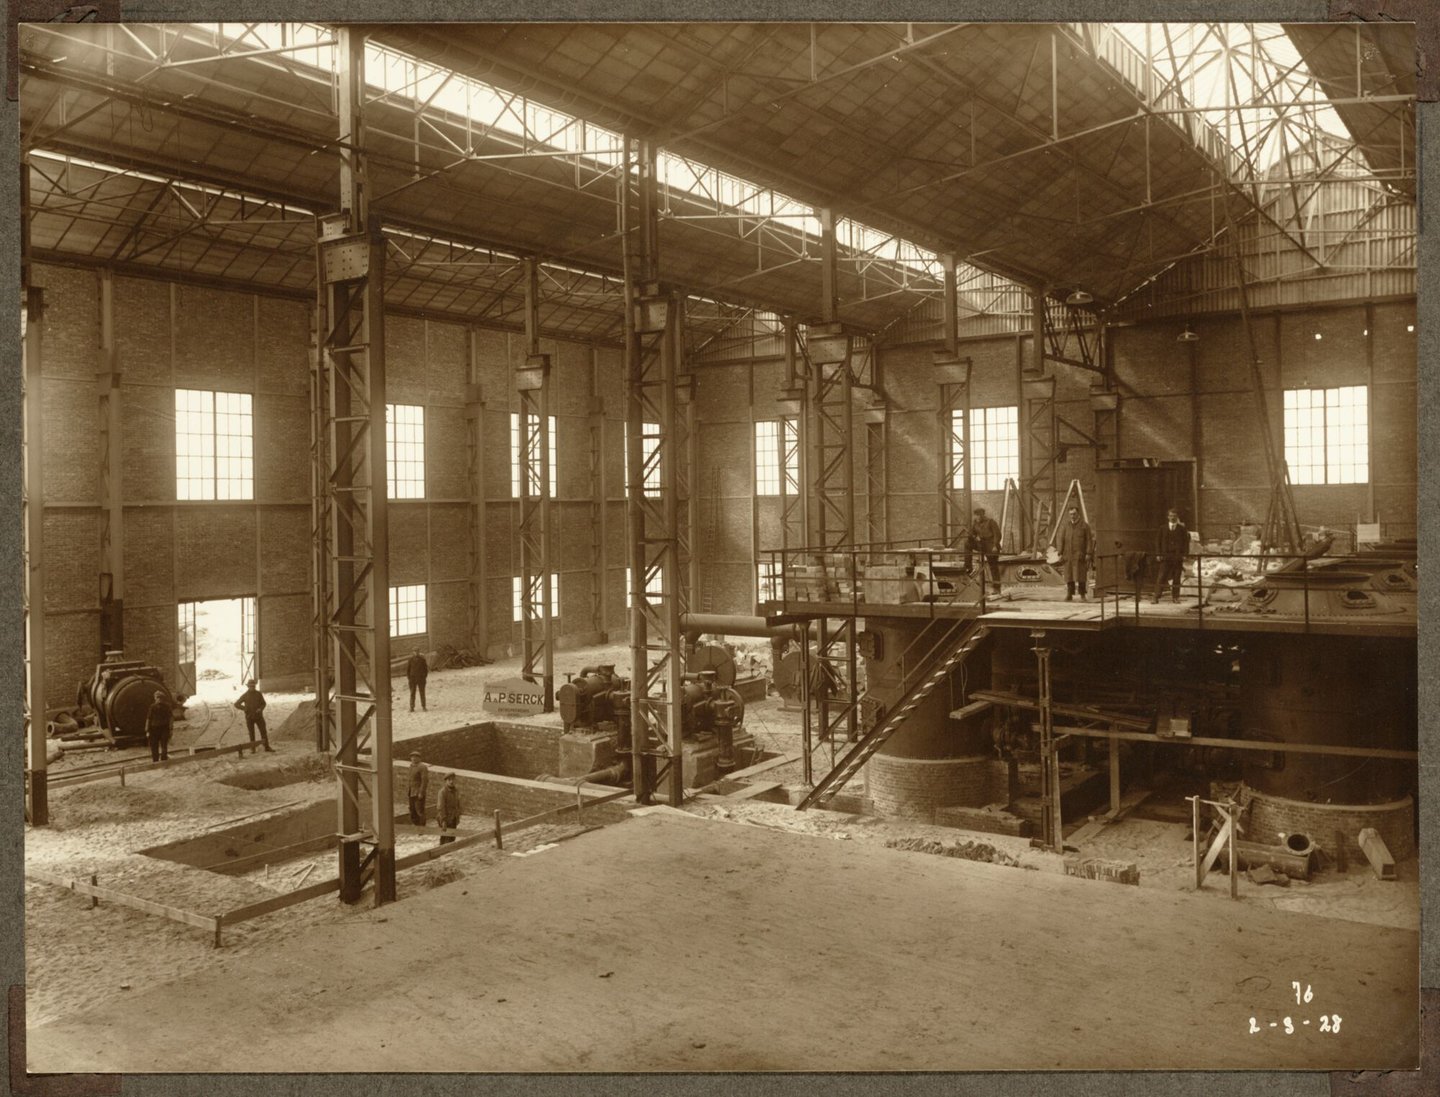 Bouw van atelier 'Bamag' en putten voor S.C.A.M-zaal van ammoniakfabriek van cokesfabriek Kuhlmann in Zelzate